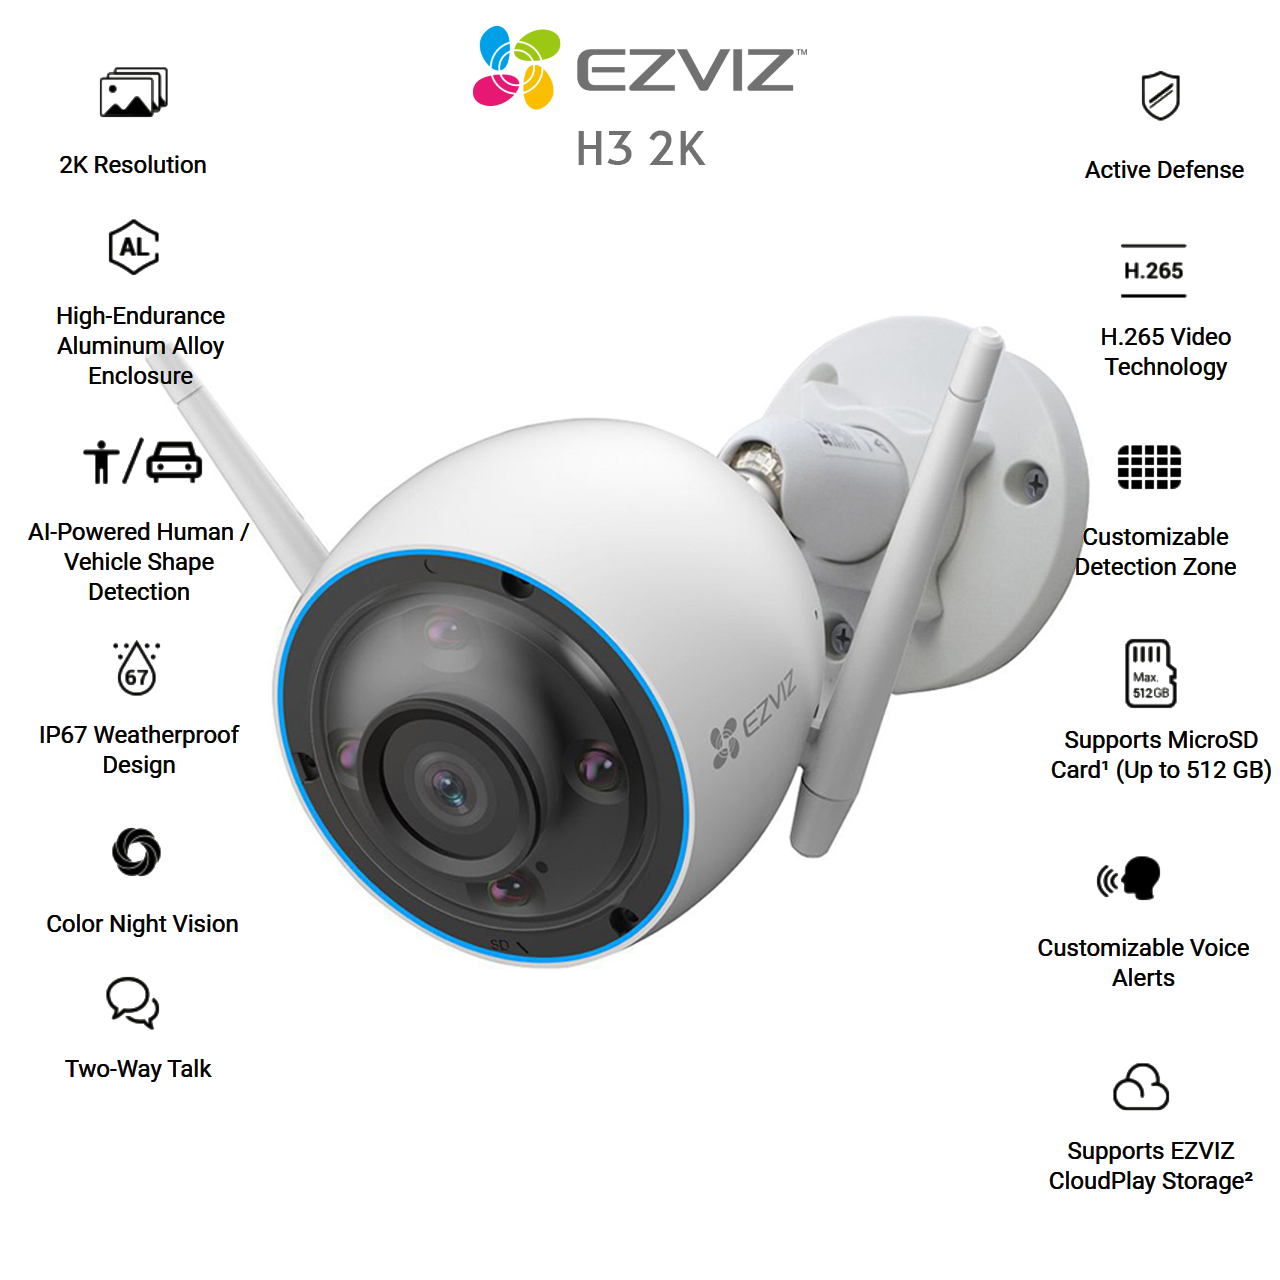 Camera IP Ngoài Trời Ezviz H3 2K 3MP - Phát hiện chuyển động thông minh, độ sắc nét cao, có màu ban đêm, vỏ hợp kim nhôm chống chịu thời tiết, chống nước IP 67 - Hàng chính hãng